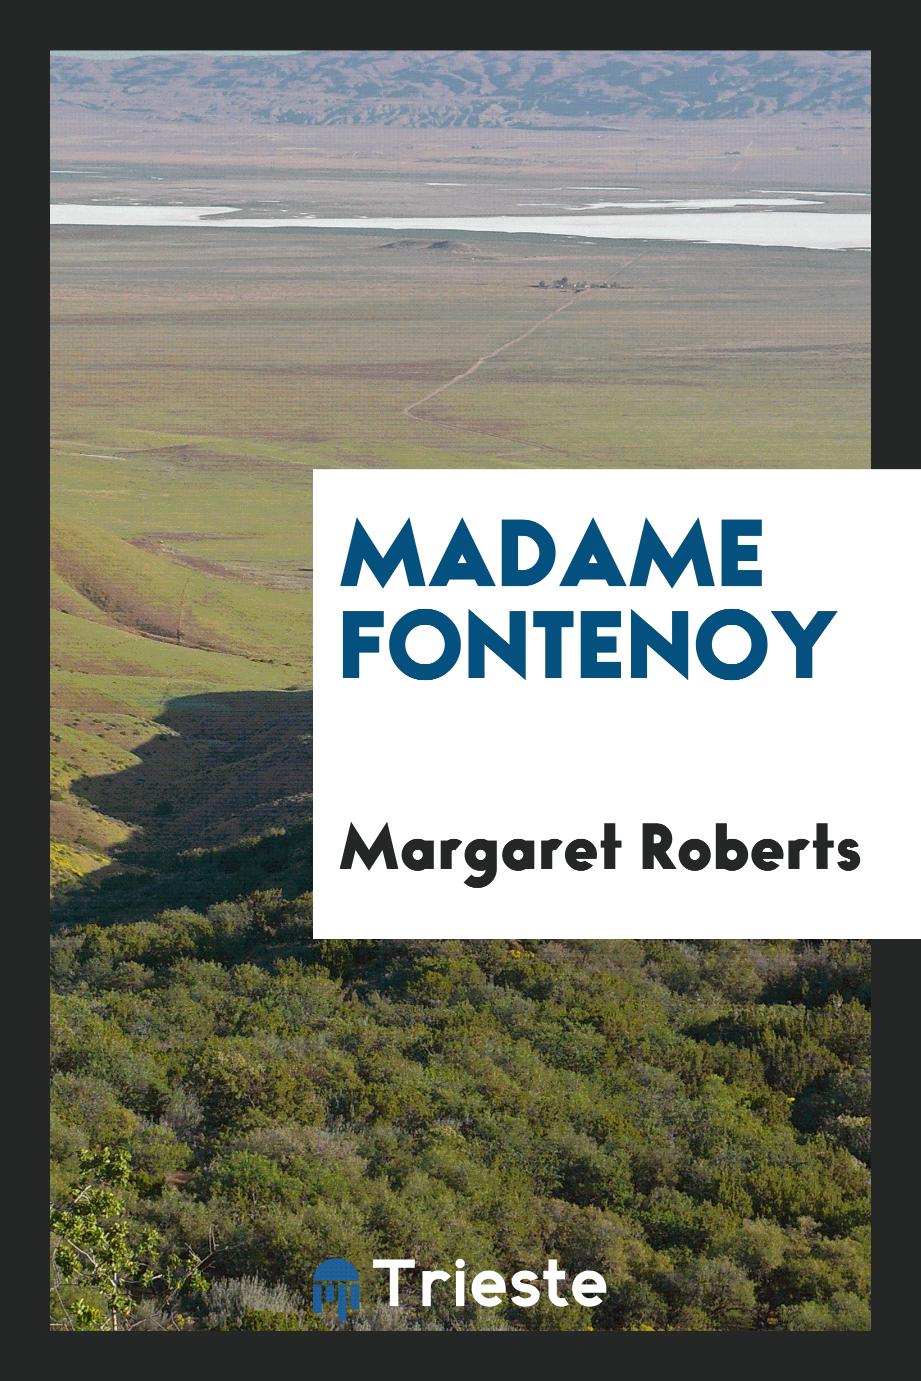 Madame Fontenoy